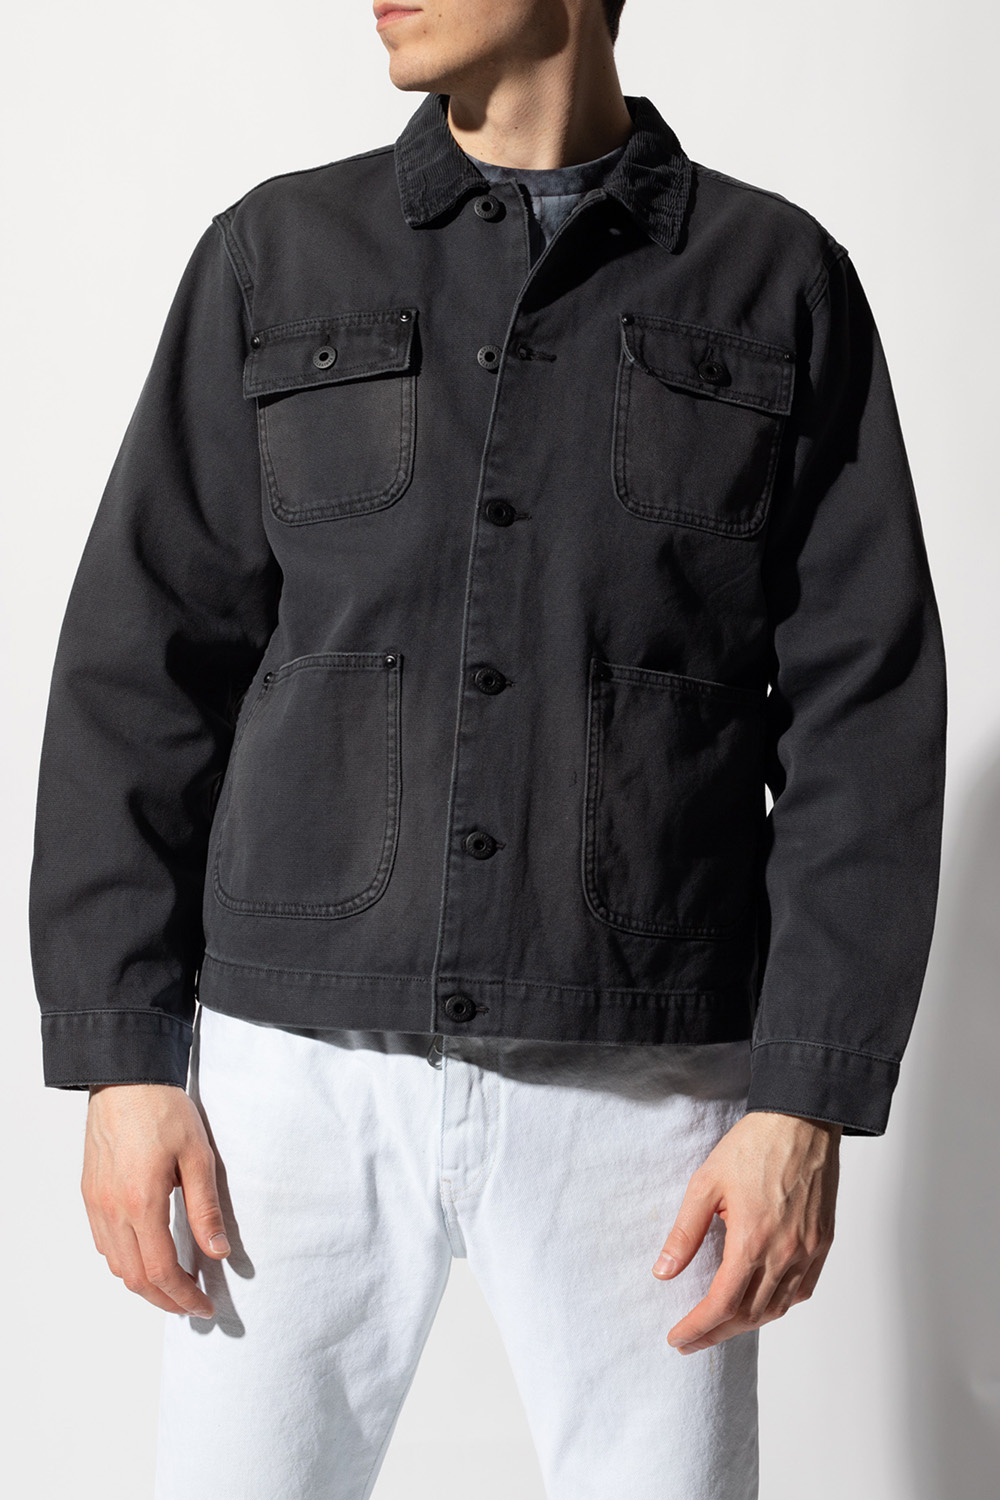 IetpShops GB - Grey 'Callum' denim jacket AllSaints - T-shirts e